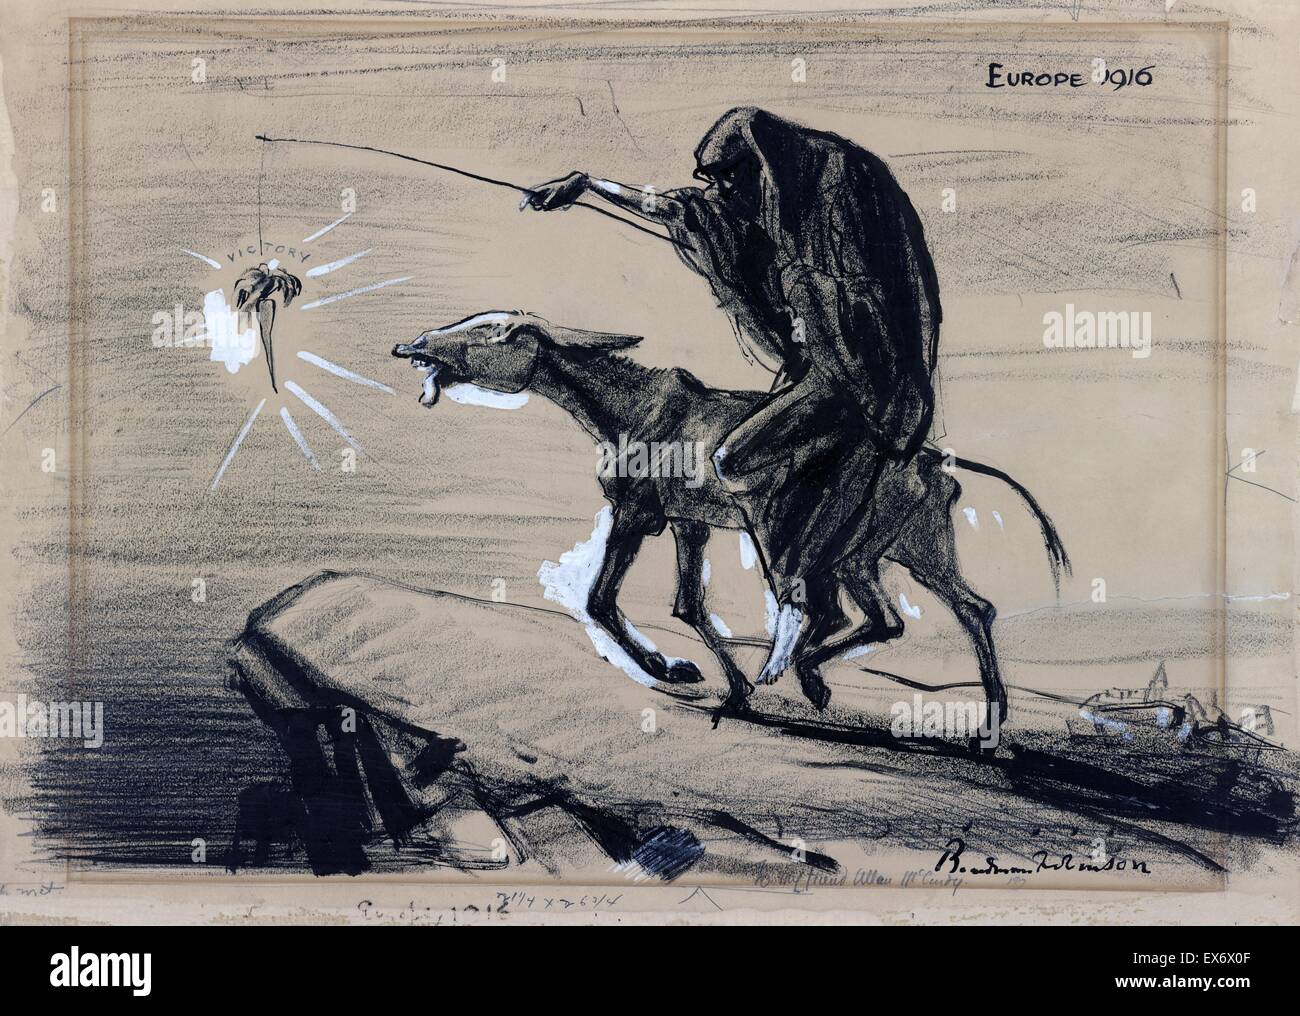 Politische Satire Cartoon Darstellung Tod eine abgemagerte Esel reiten und führt es in Richtung Abgrund baumelt eine Karotte, "Sieg", von einem Stick. Von Boardman Robinson (1876-1952), kanadischer Künstler, Illustrator und Karikaturist. Datiert 1916 Stockfoto